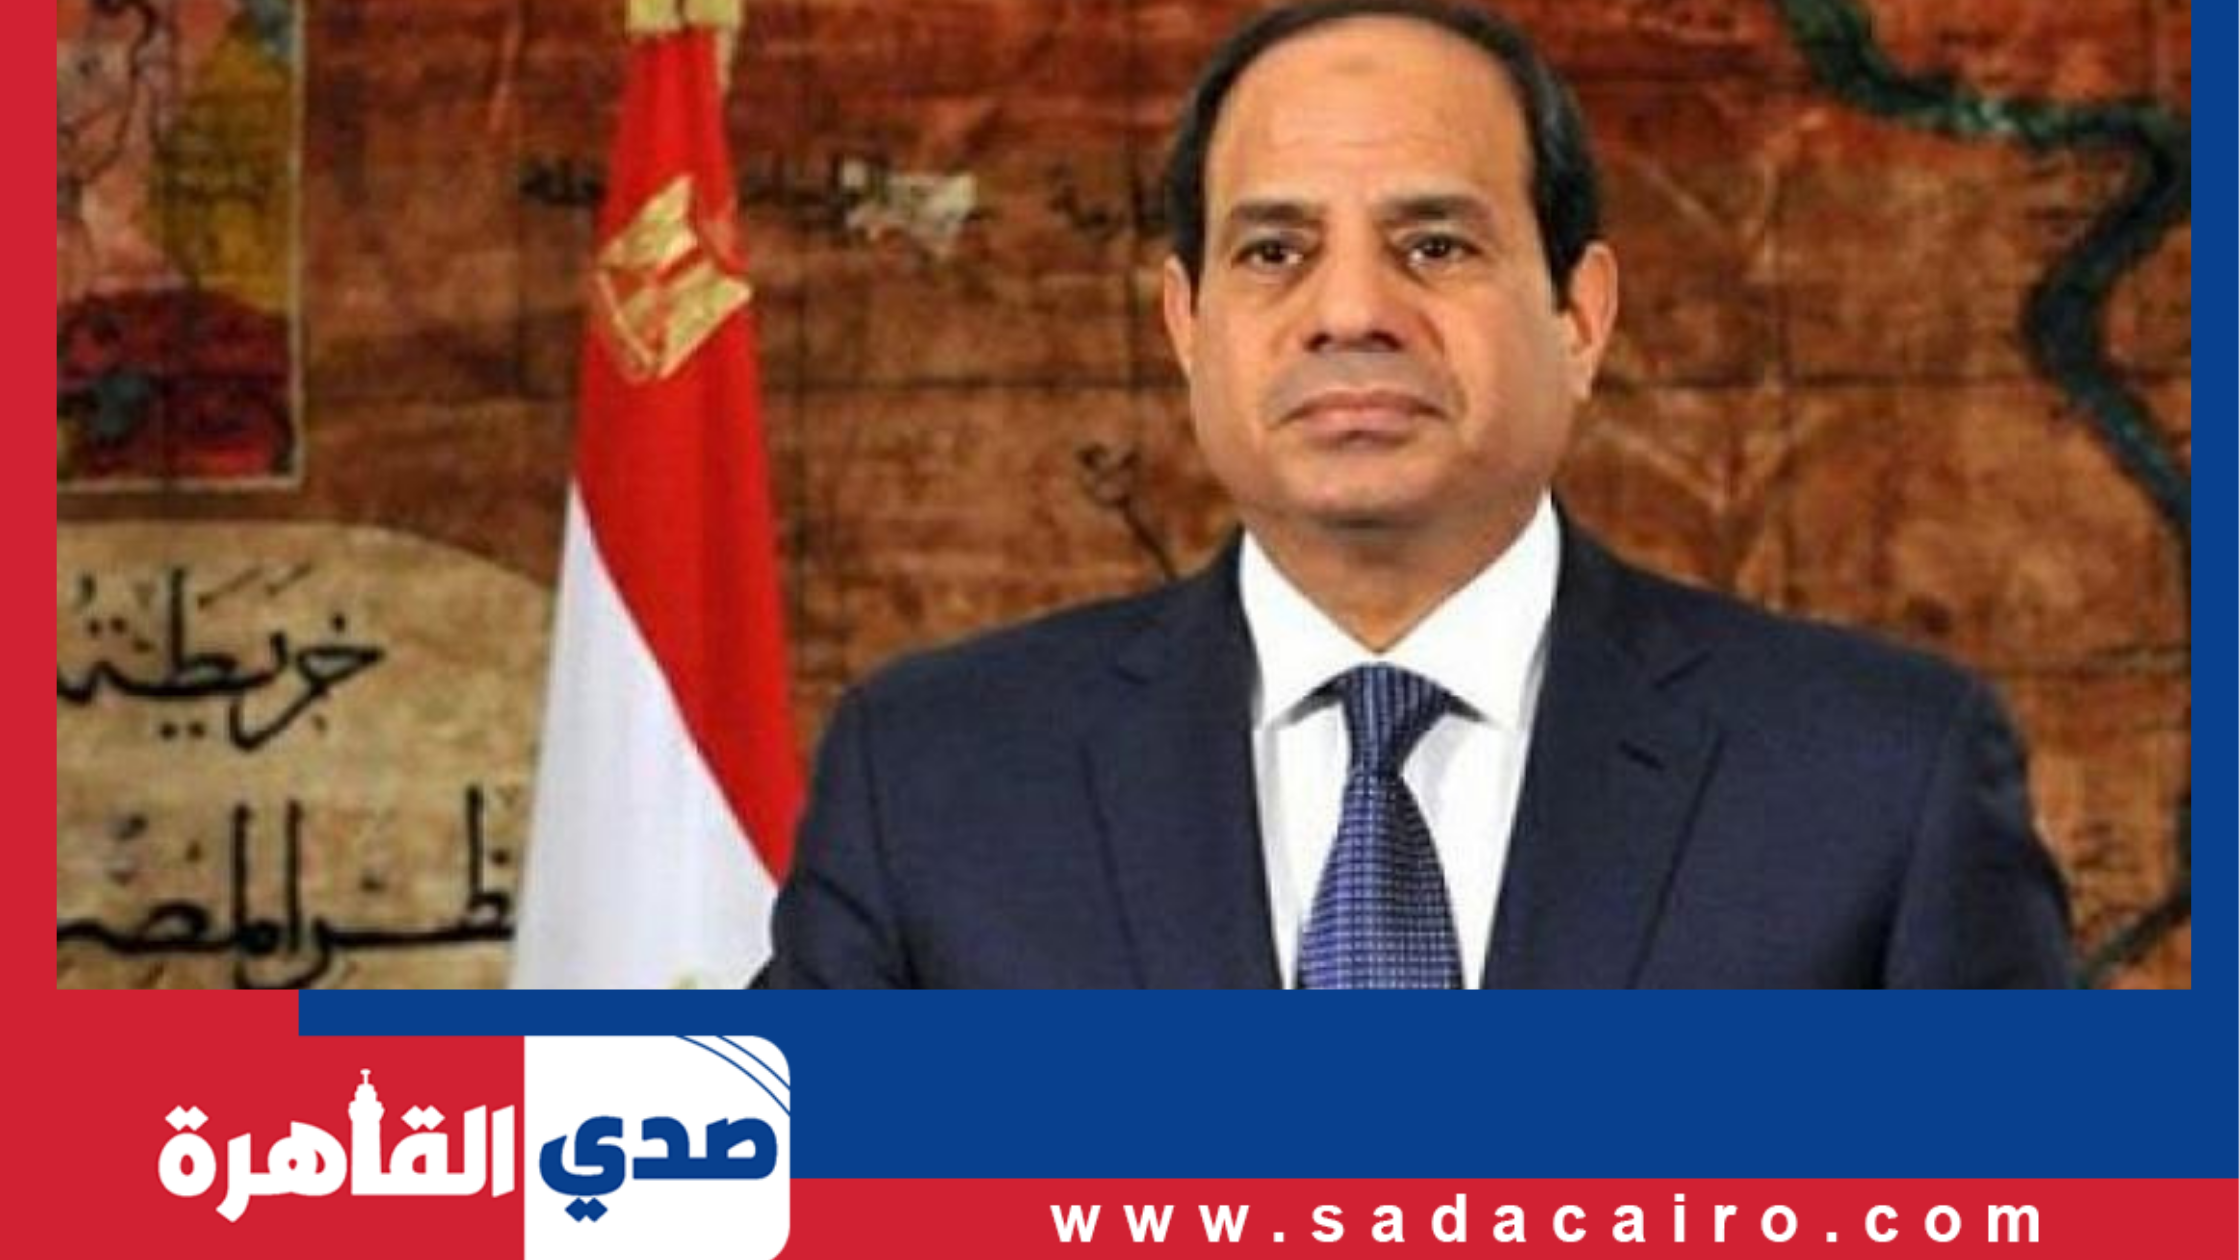 رئيس الجمهورية يكشف طبيعة الدعم في مصر خلال الفترة الحالية